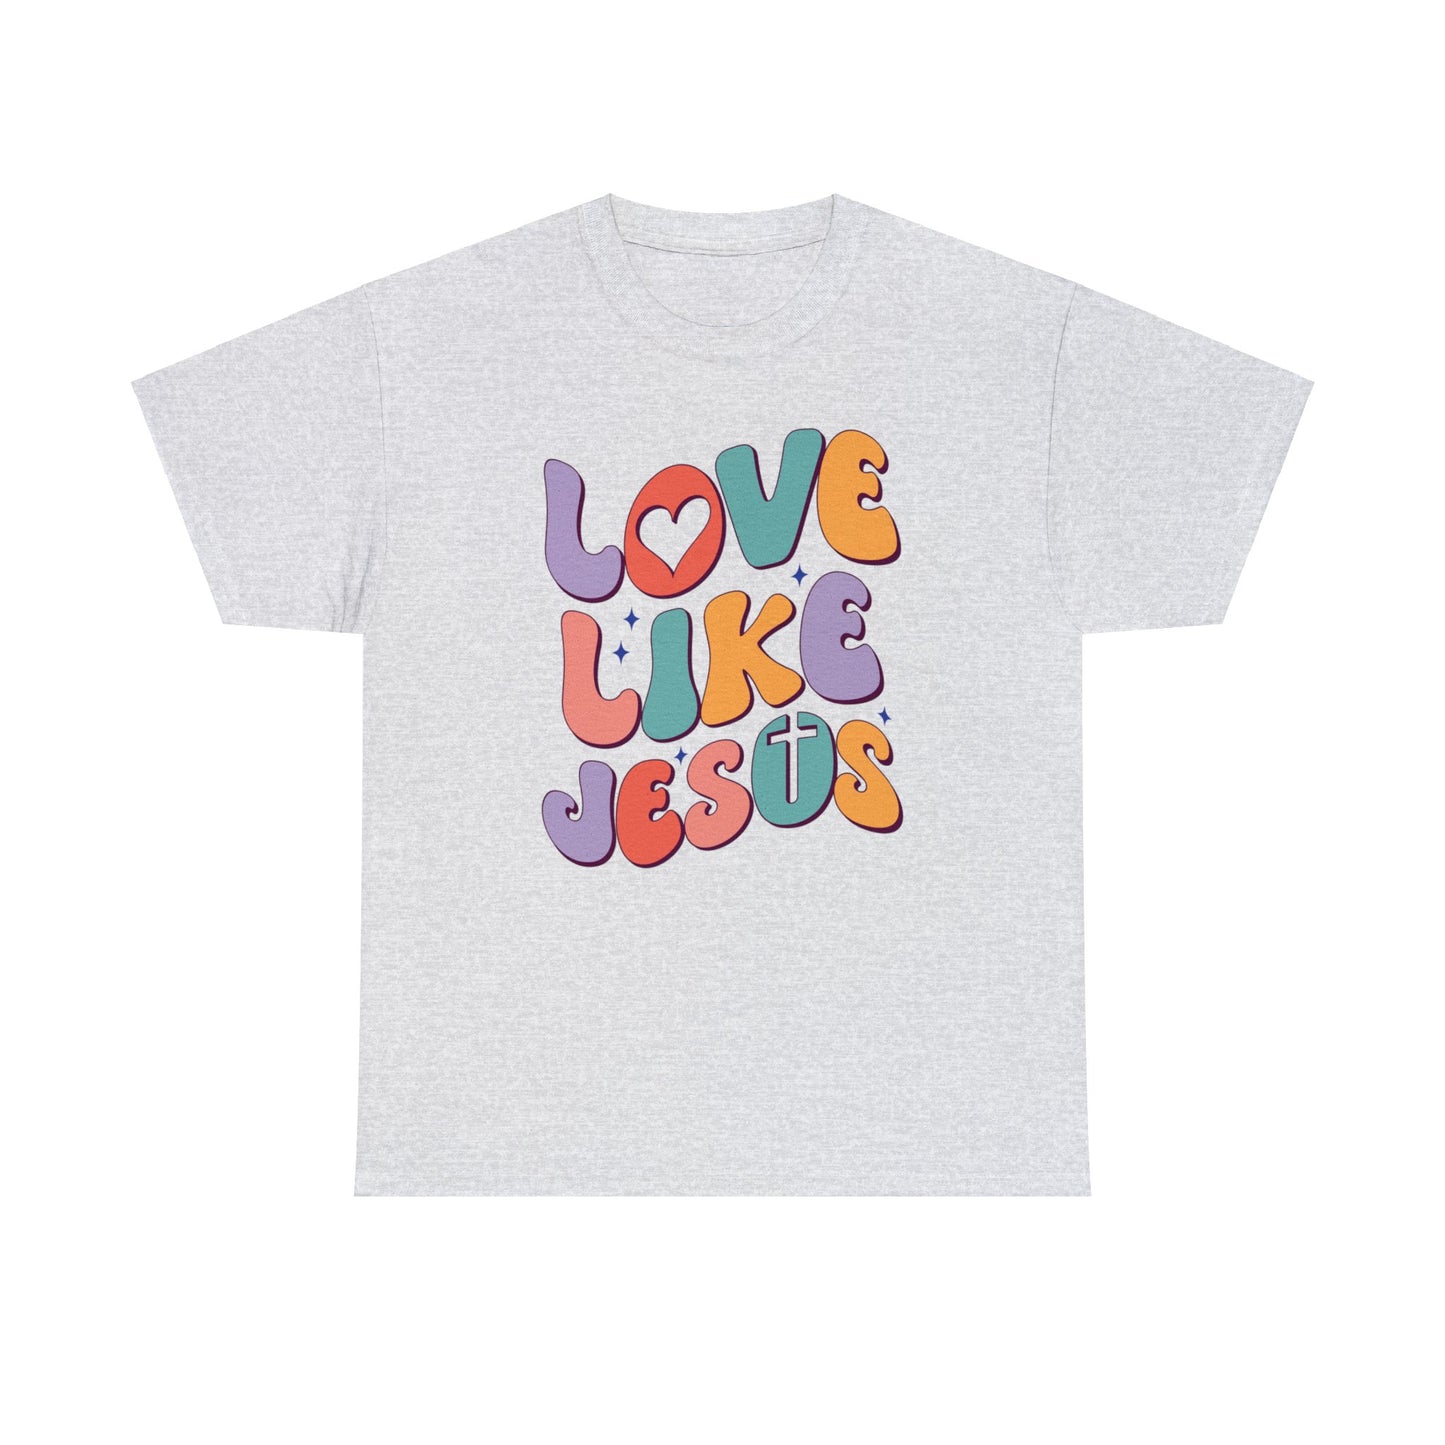 Love Like Jesus Shirt, Christian Shirt, Religious Shirt, Faith Tee (Faith-2)